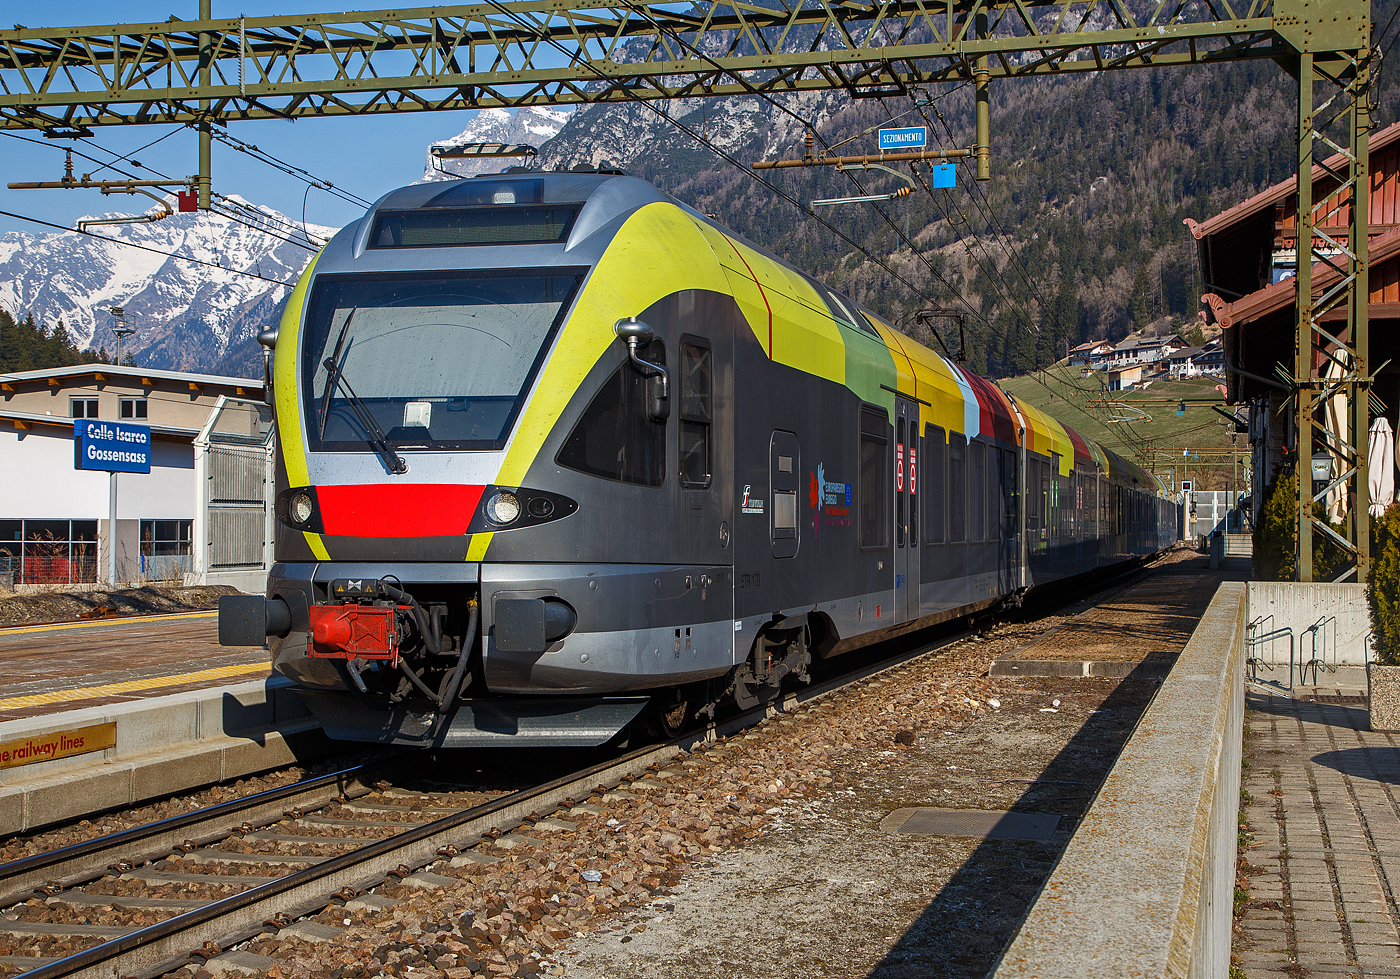 Der Trenitalia ETR 170 217, ein sechsteiliger Stadler FLIRT (MS für I / A) hat am 26.03.2022, als Regionalzug von Brenner/Brennero via Bozen/Bolzano nach Meran/Merano, den Bahnhof Gossensaß/Colle Isarco erreicht.

Diese sechsteiligen Elektrotriebzüge vom Typ Stadler FLIRT wurden für den grenzüberschreitenden Verkehr zwischen Italien und Österreich konzipiert. Die 160 km/h schnellen Züge werden auf den Linien Meran-Bozen-Brenner, Unterland Trento-Ala und Franzensfeste-Innichen-Lienz (Pustertal) eingesetzt. Die aktuelle Flotte besteht derzeit aus 25 FLIRTs. Sie sollen auch noch im Vinschgau (Meran-Mals), unter 25 kV 50 Hz, eingesetzt werden. Sie sind mit dem Zugsicherungssystem ETCS ausgestattet. Die Flachbautechnik ermöglicht den direkten Einstieg ohne Podest. Der klimatisierte Innenraum und das offene und transparente Design machen die Reise mit angenehm für die Passagiere. Ein modernes Informationssystem versorgt die Fahrgäste mit allen notwendigen Informationen, sie sind zudem mit WLAN ausgestattet.

TECHNISCHE DATEN:
Bezeichnungen: ETR 170 (6-Teiler)
Spurweite:  1.435 mm (Normalspur)
Achsformel: Bo’ 2’2’2’2’2’ Bo’
Länge über kupplung:106.578 mm 
Fahrzeugbreite: 2.800 mm
Fahrzeughöhe: 4.150 mm
Achsabstand in den Drehgestellen: 2.700 mm
Treibraddurchmesser: 860 mm (neu)
Laufraddurchmesser: 750 mm (neu)
Dauerleistung am Rad: 2.000 kW
Maximale Leistung am Rad: 2.600 kW
Stromsysteme: 15kV/16,7Hz; 25kV/50Hz; 3kV DC 
Anfahrzugkraft (bis 47 km/h):  200 kN
Höchstgeschwindigkeit: 160 km/h
Beschleunigung:  1,0 m/s²
Anzahl der Türen je Längsseite: 10
Breite der Türen: 1.320 mm
Maximale Sitzplätze: 258